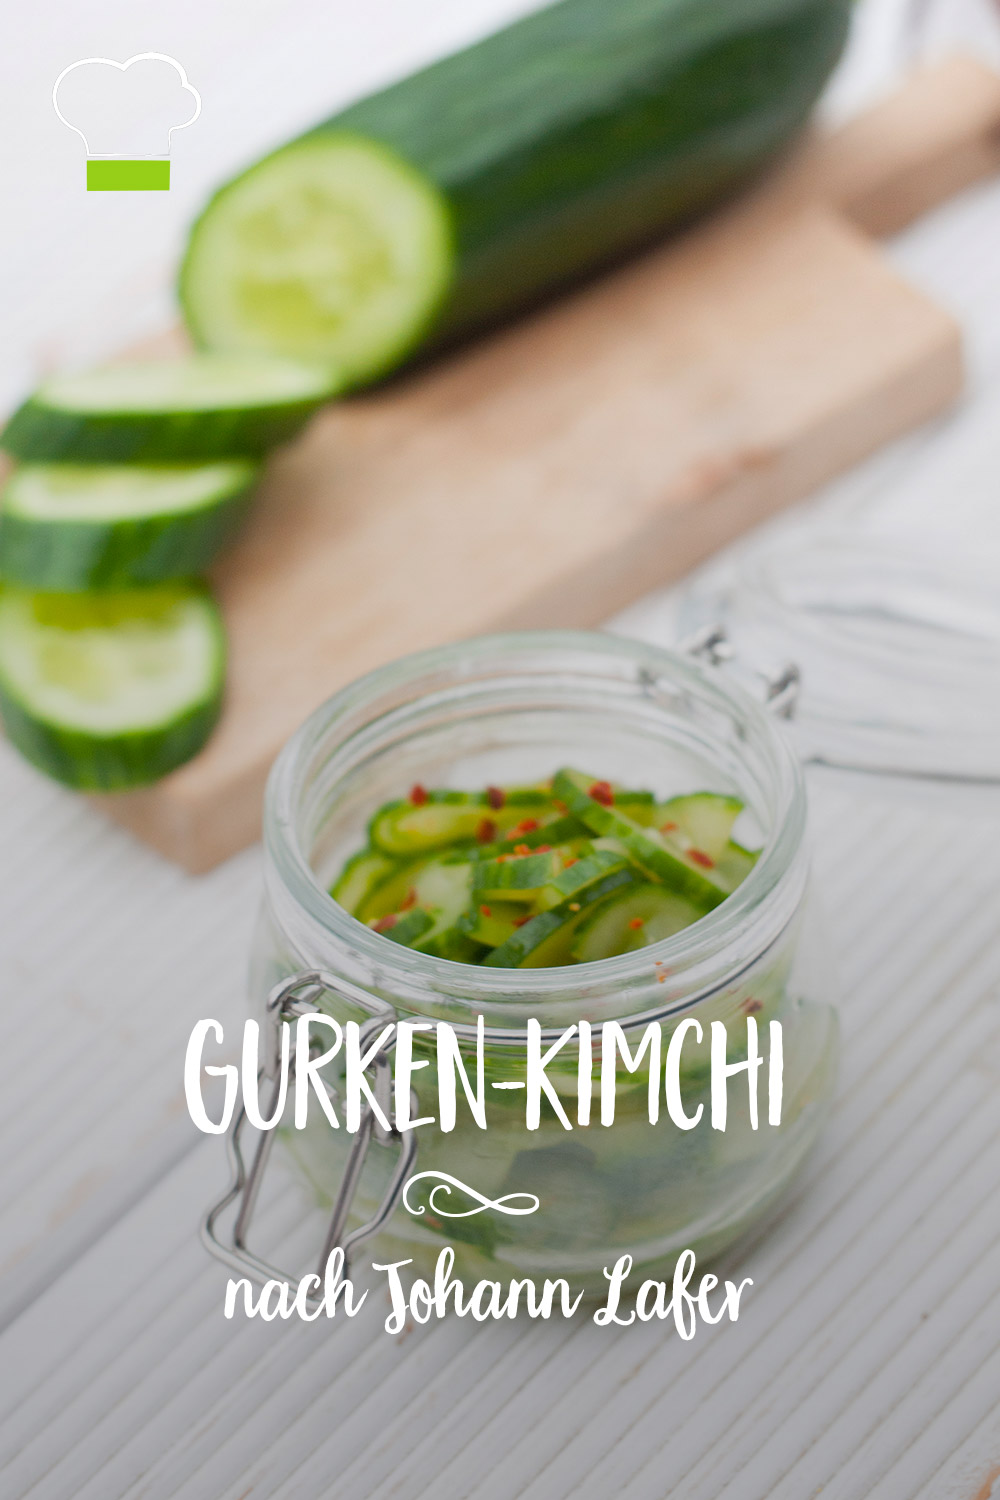 Gurken-Kimchi Pinterest Pin